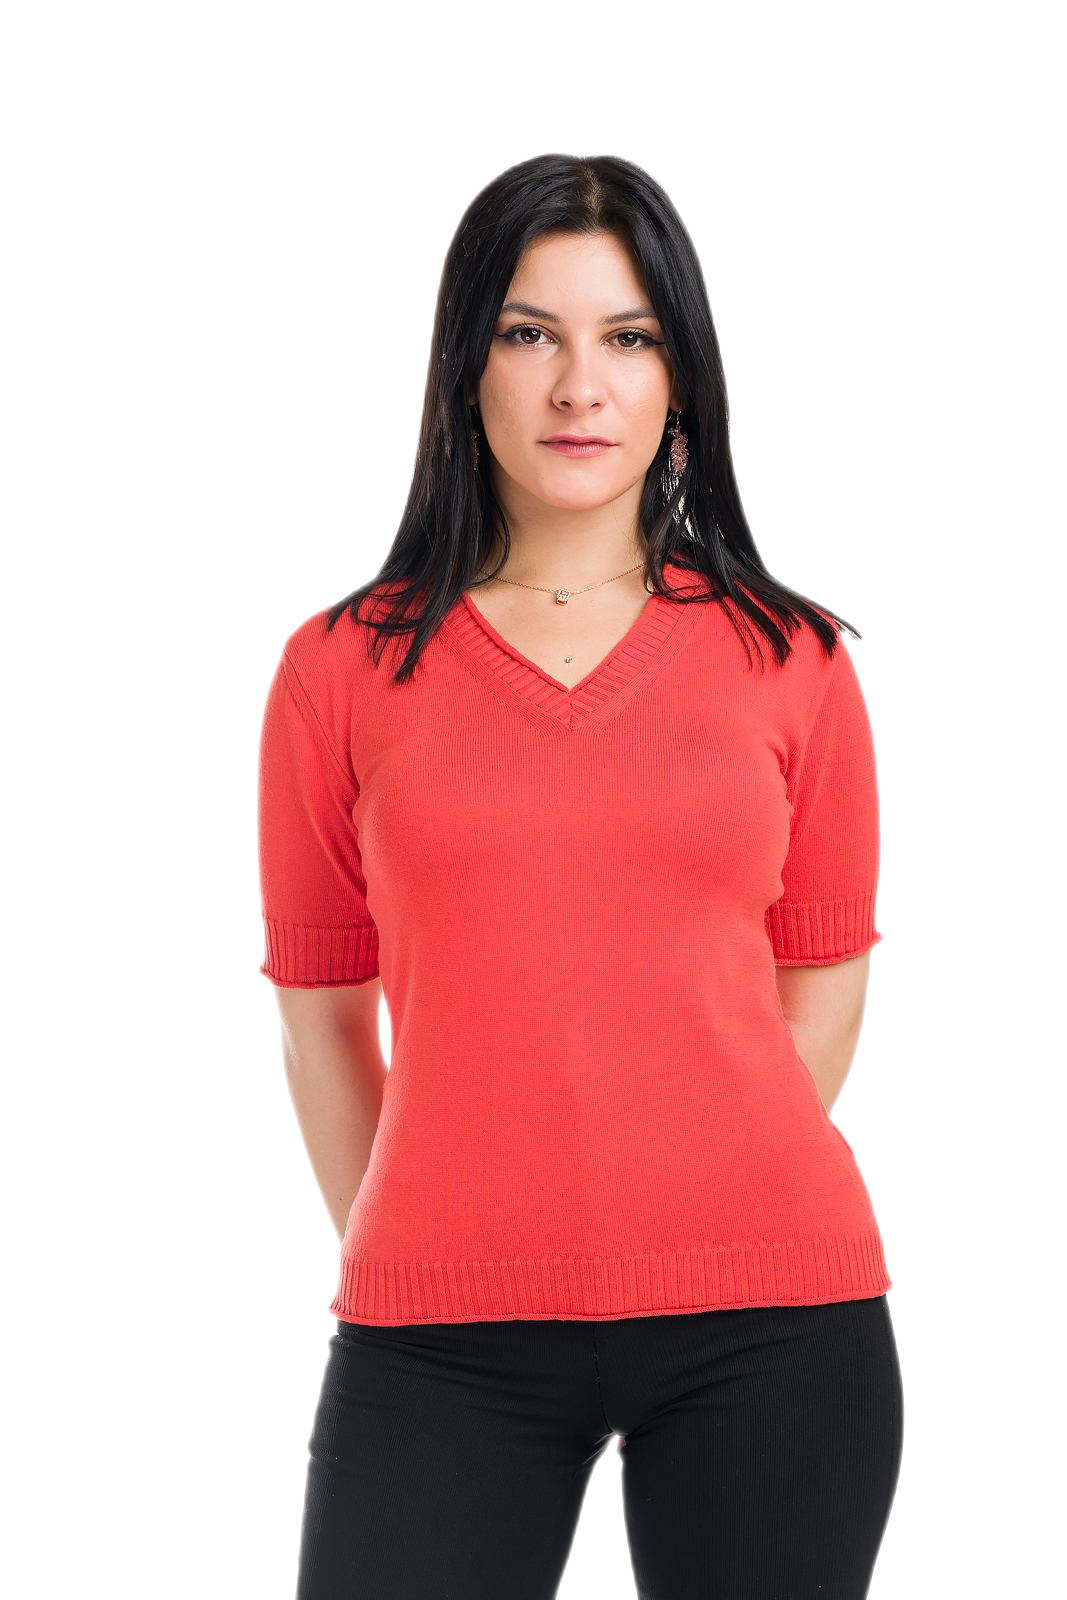 maglietta donna a manica corta estiva in cotone rosso corallo